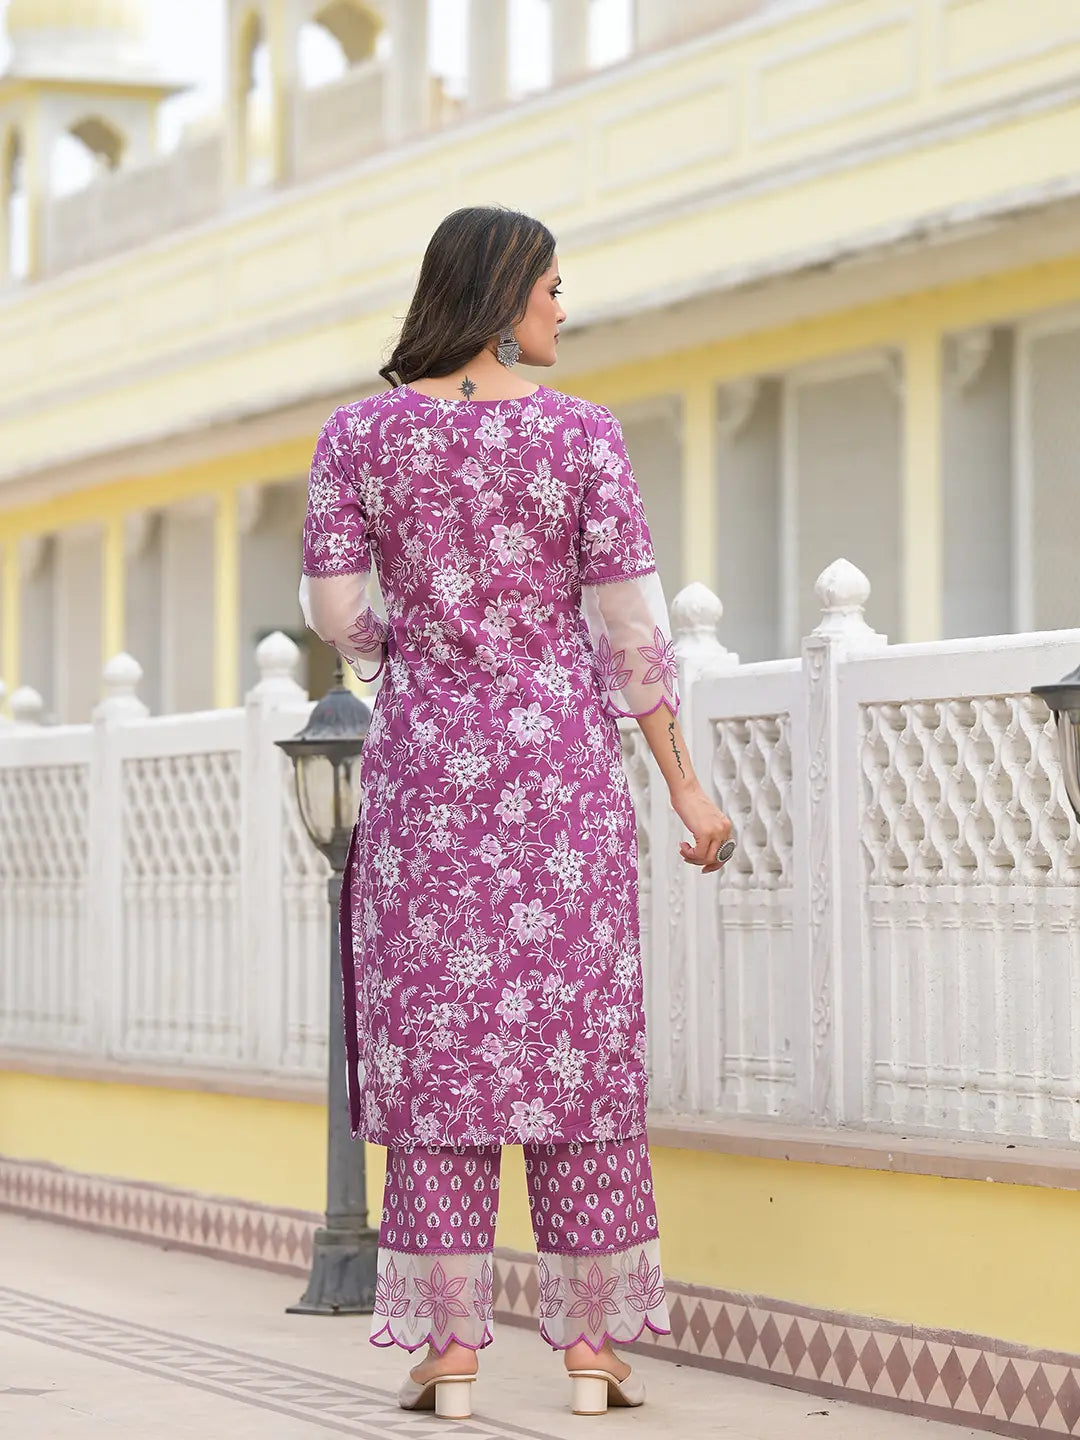 Lavender Floral Print Pakistani Style Kurta Trouser And Dupatta Set-Yufta Store-6891SKDLVM